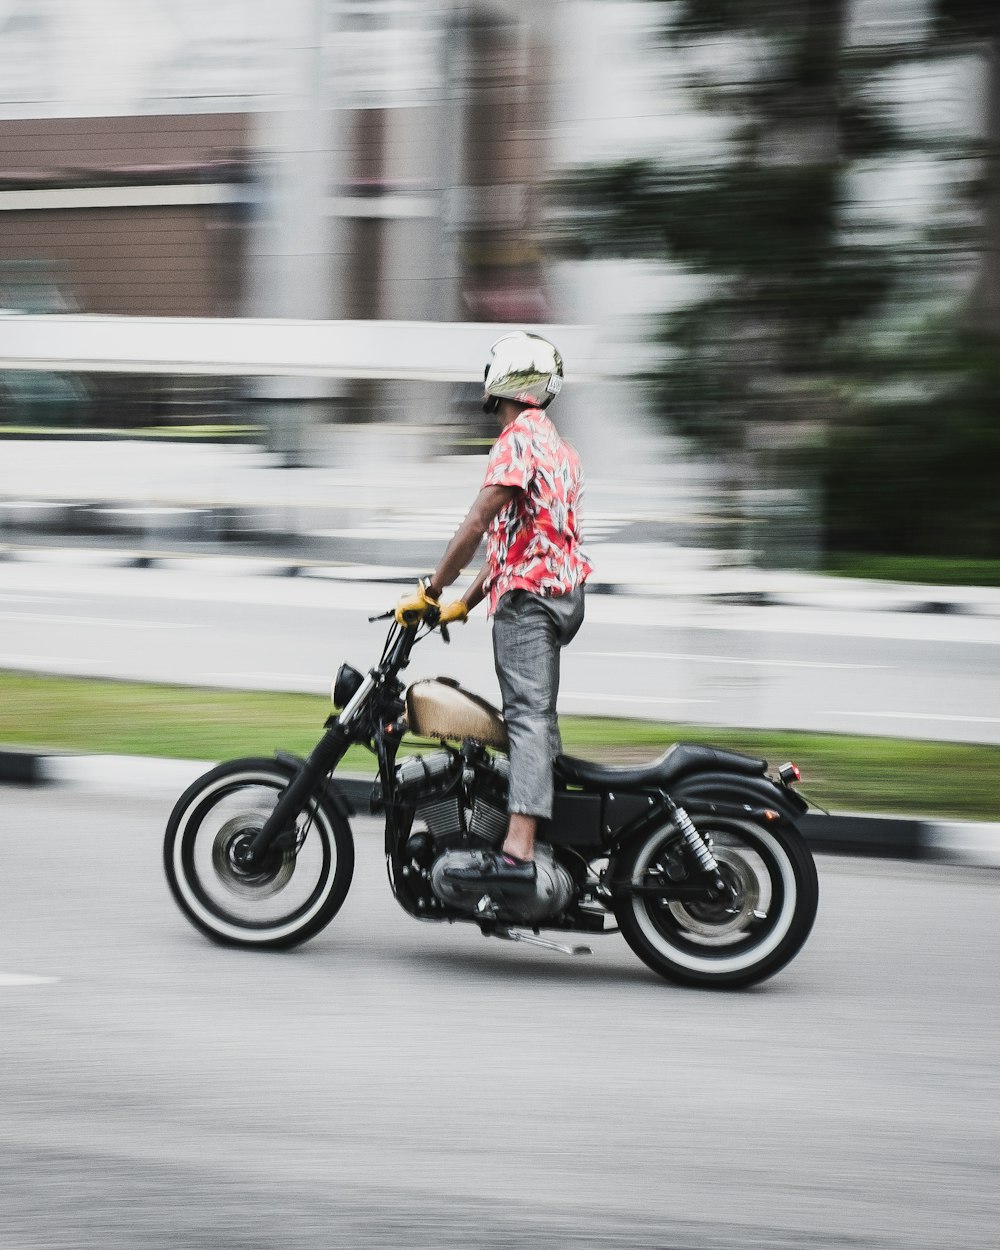 Photographie à longue exposition d’un homme conduisant une moto